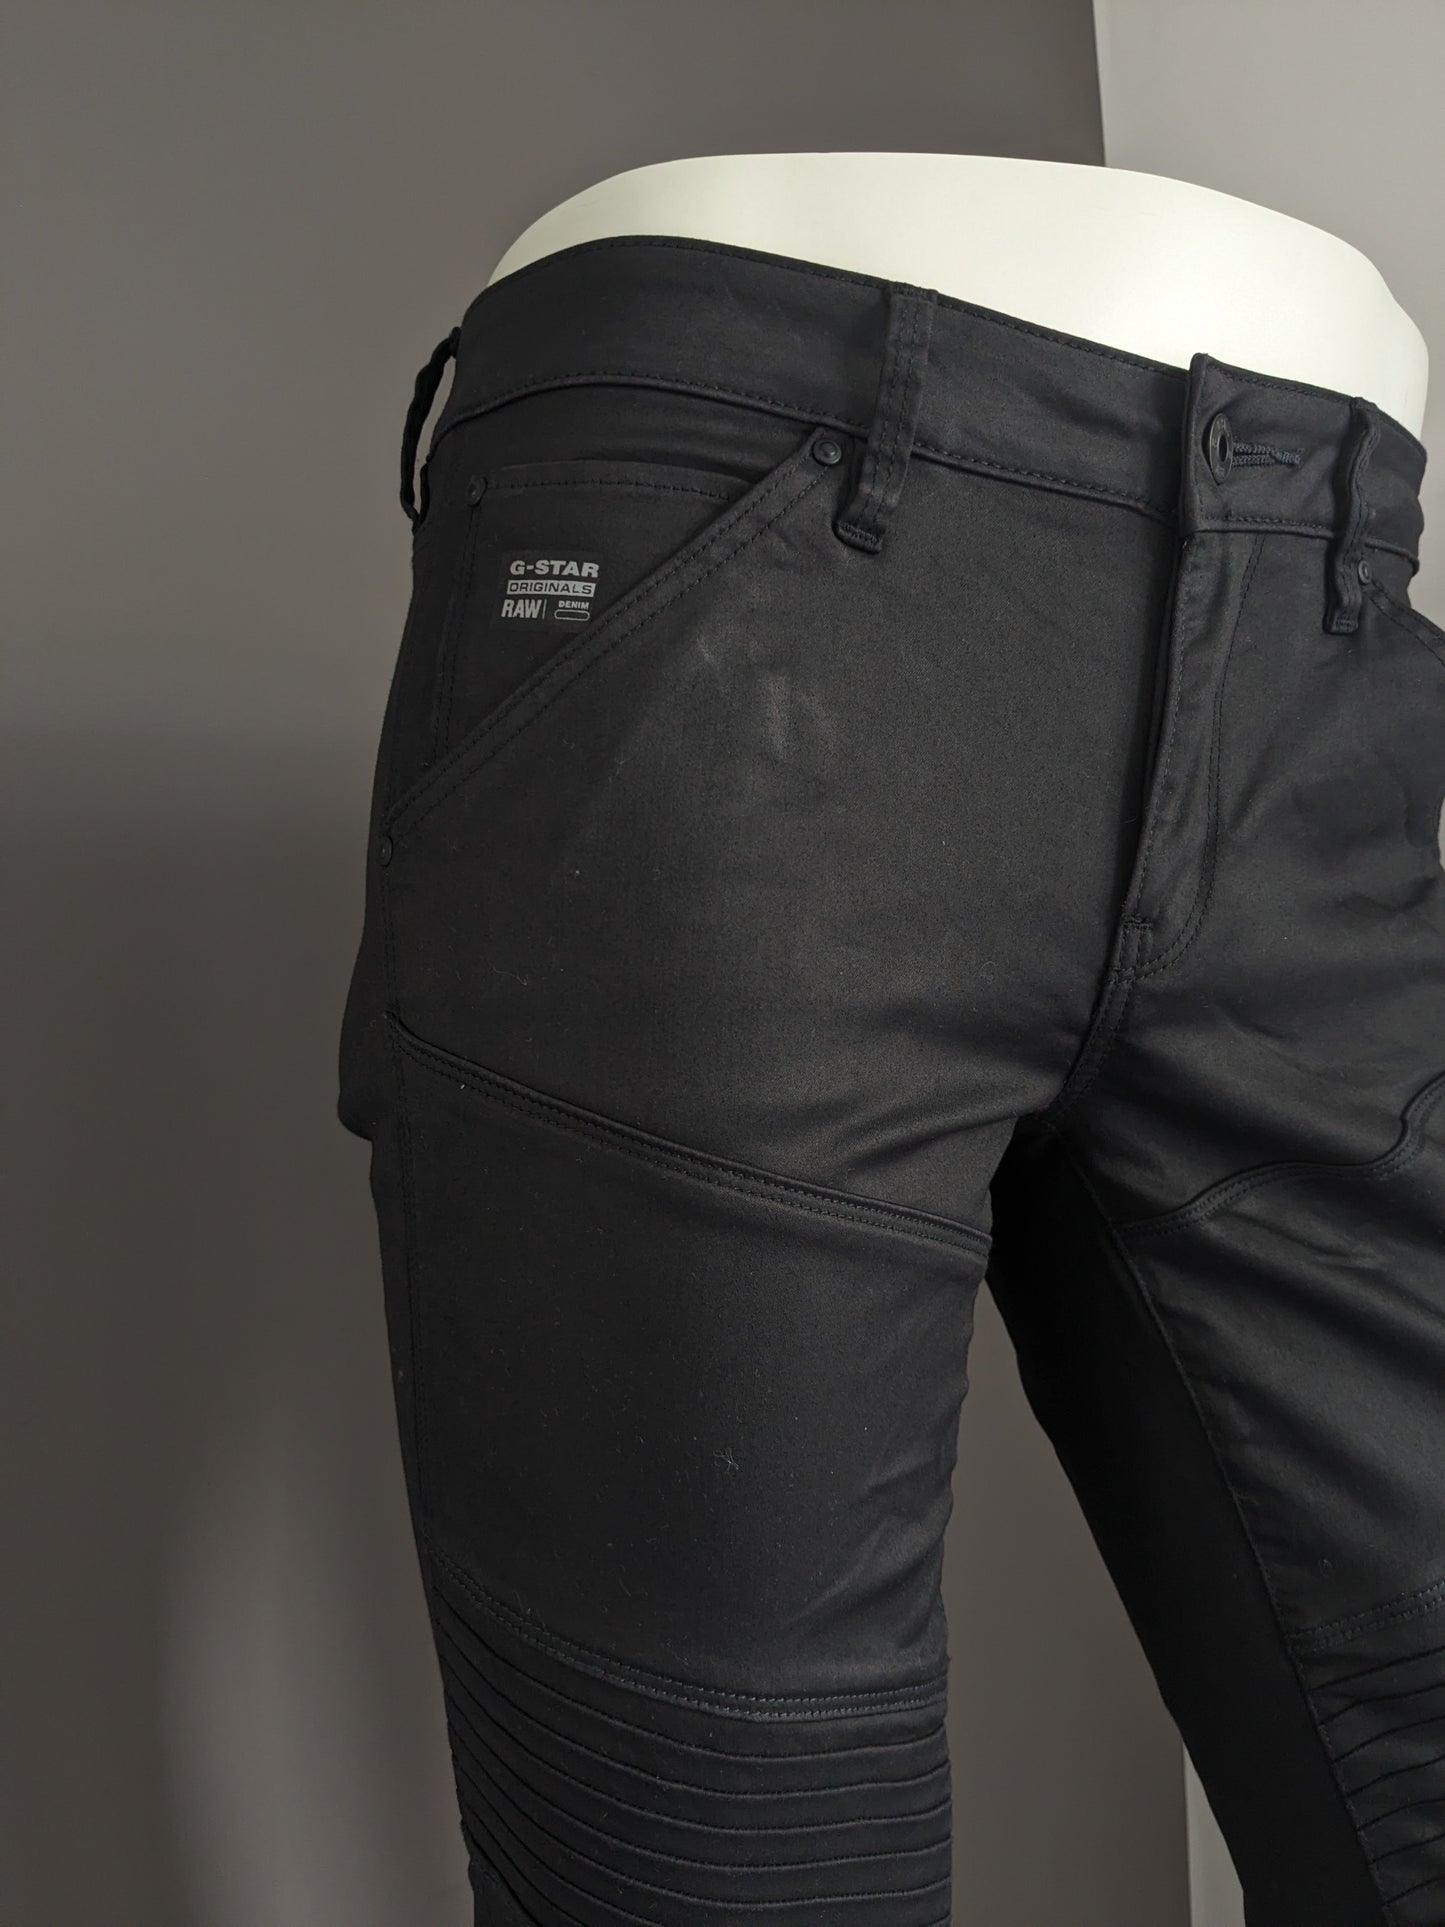 G-Star Raw Jeans. Schwarze Beschichtung. Typ 5620 Custom. Größe W29 - L32. Strecken.